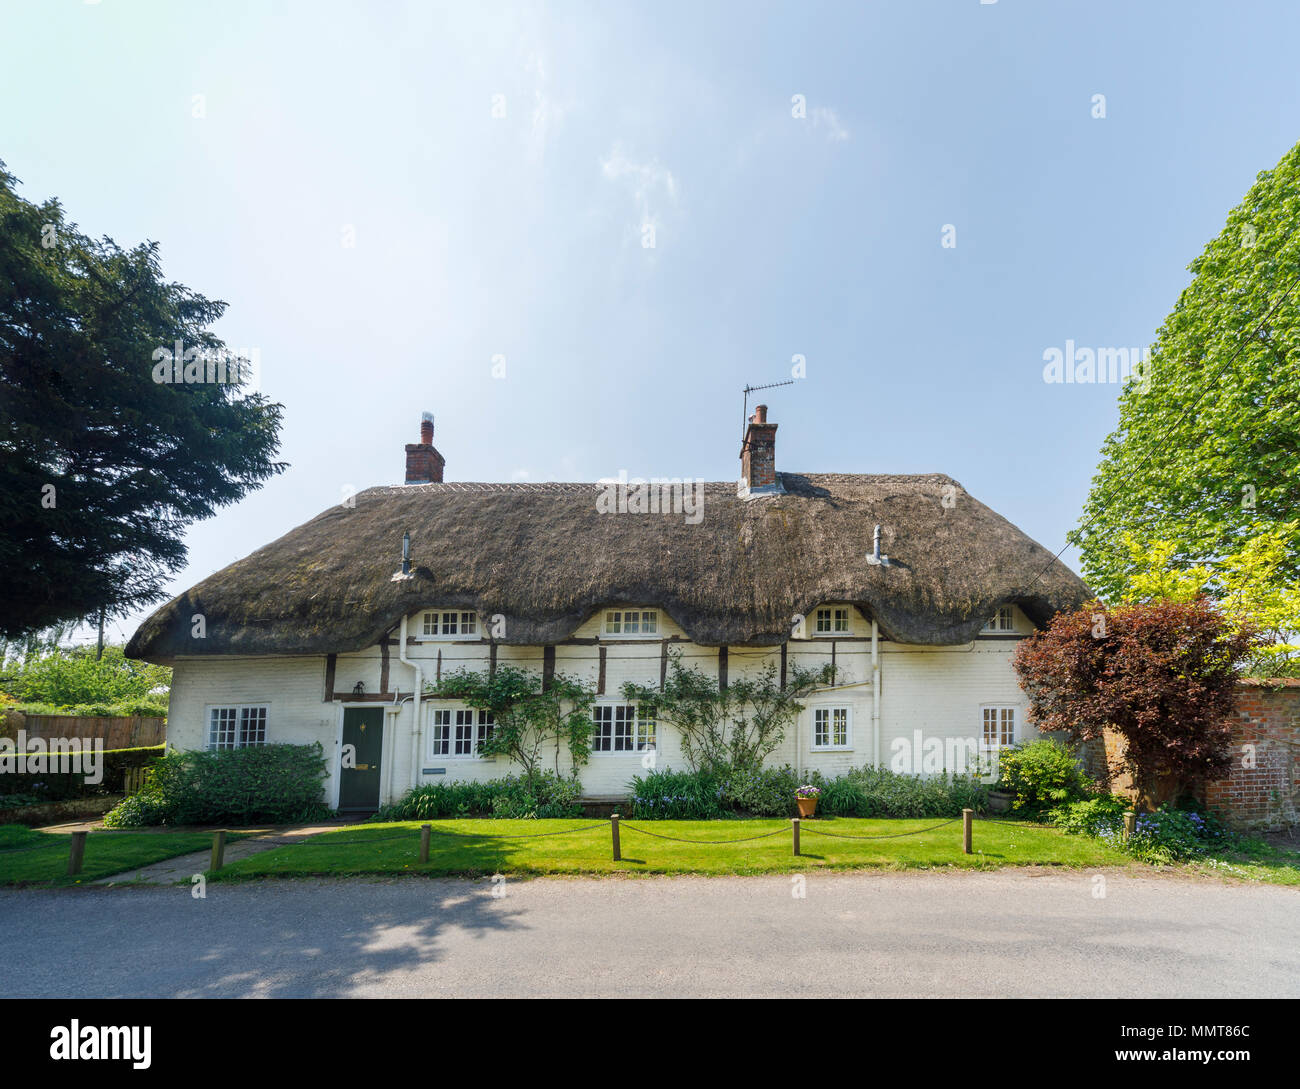 Belle grande chaumière au Stratton, un petit village près de Winchester, Hampshire, Angleterre du sud en typique style architectural local Banque D'Images